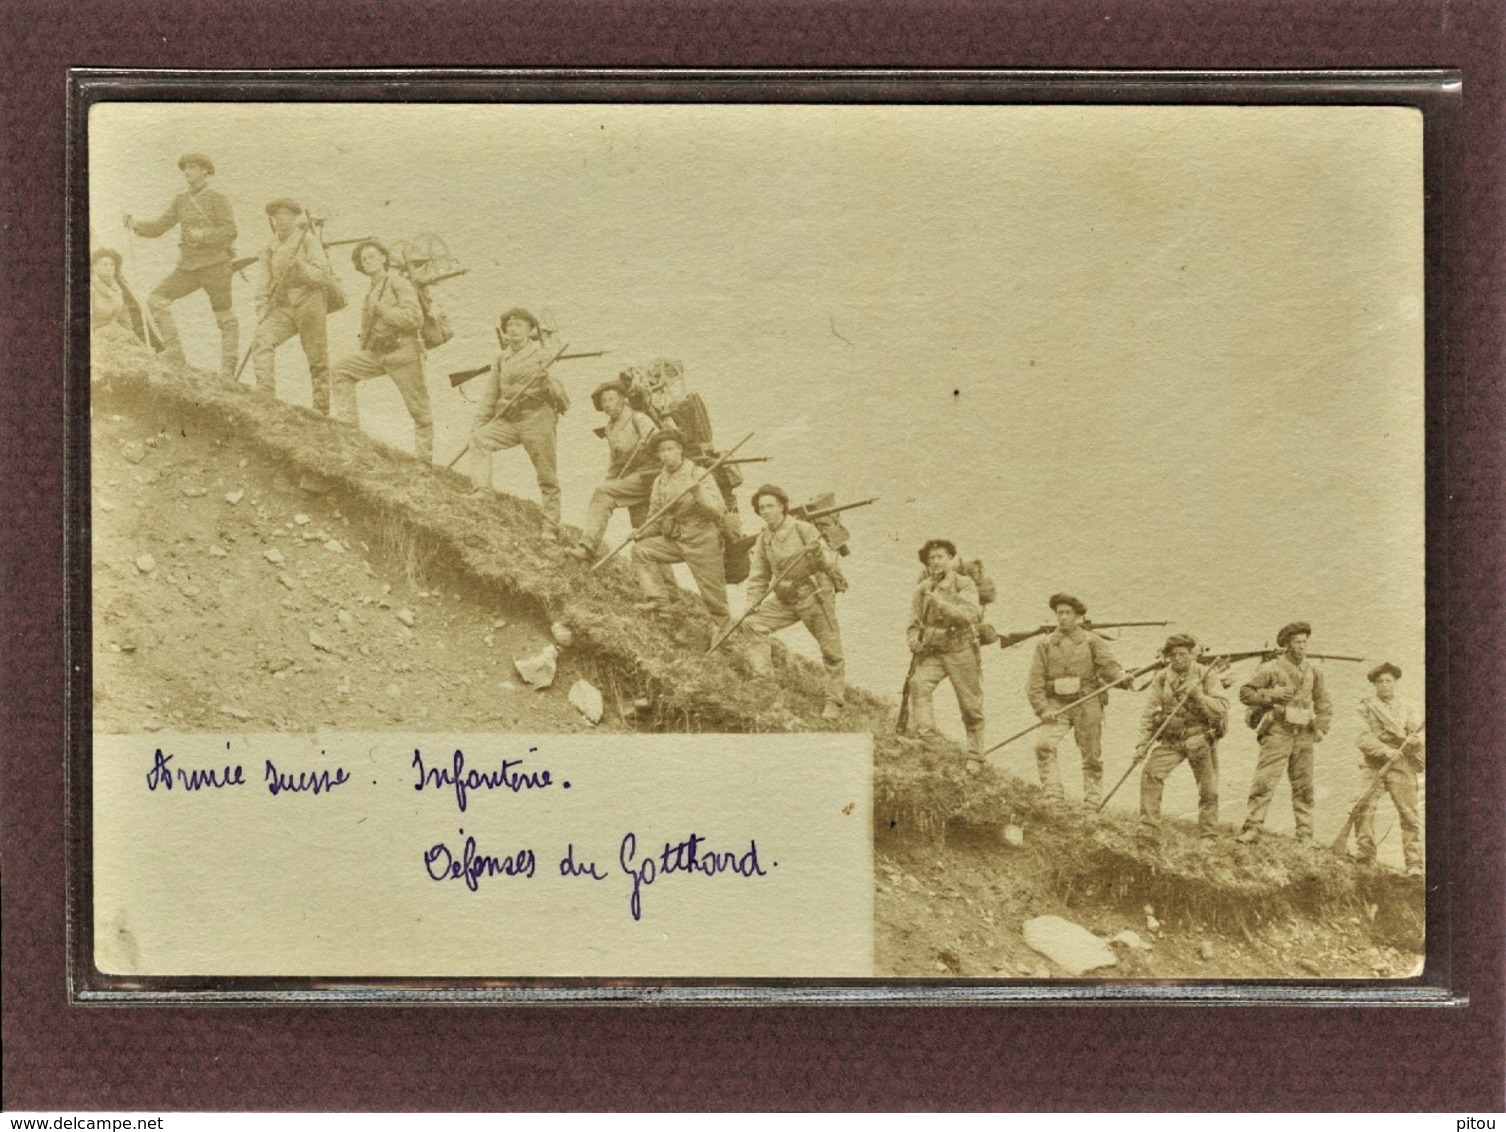 SUISSE - ARMEE SUISSE - CARTE PHOTO - DEFENSES DU GOTTHARD - MILITAIRES EN ASCENSION - 1900 - Sion